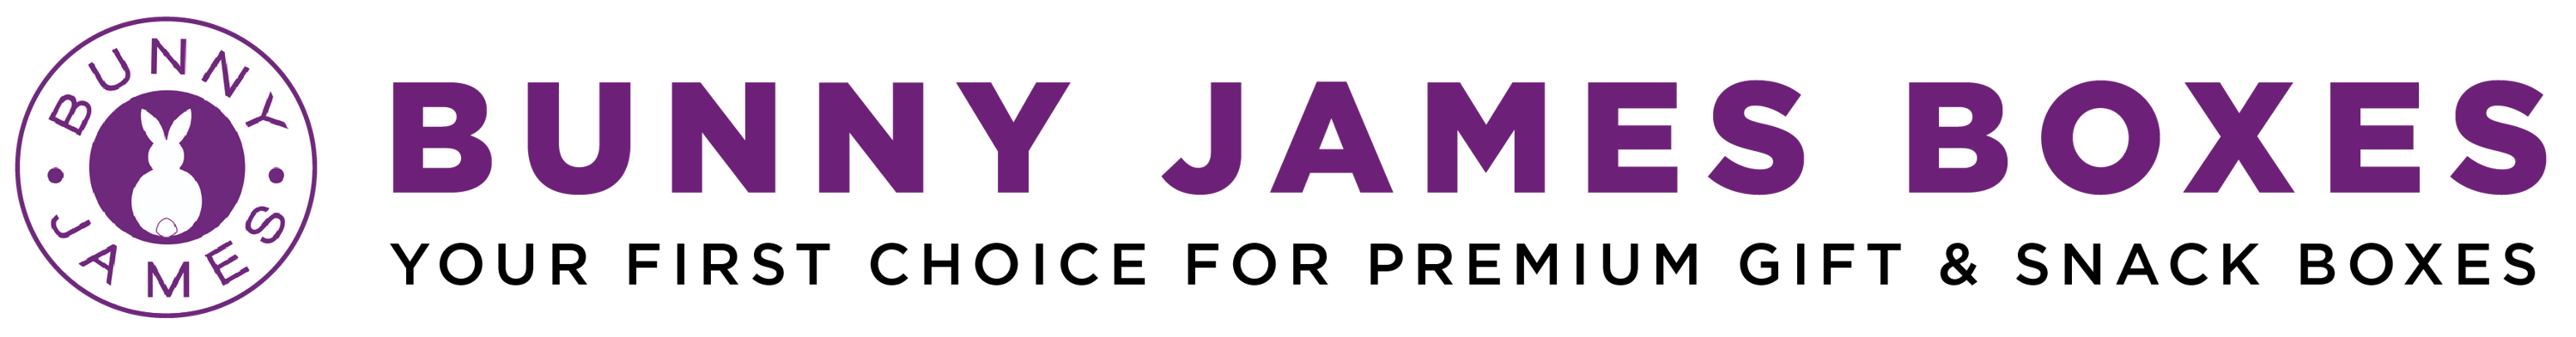 Bunny James Boxes Logo